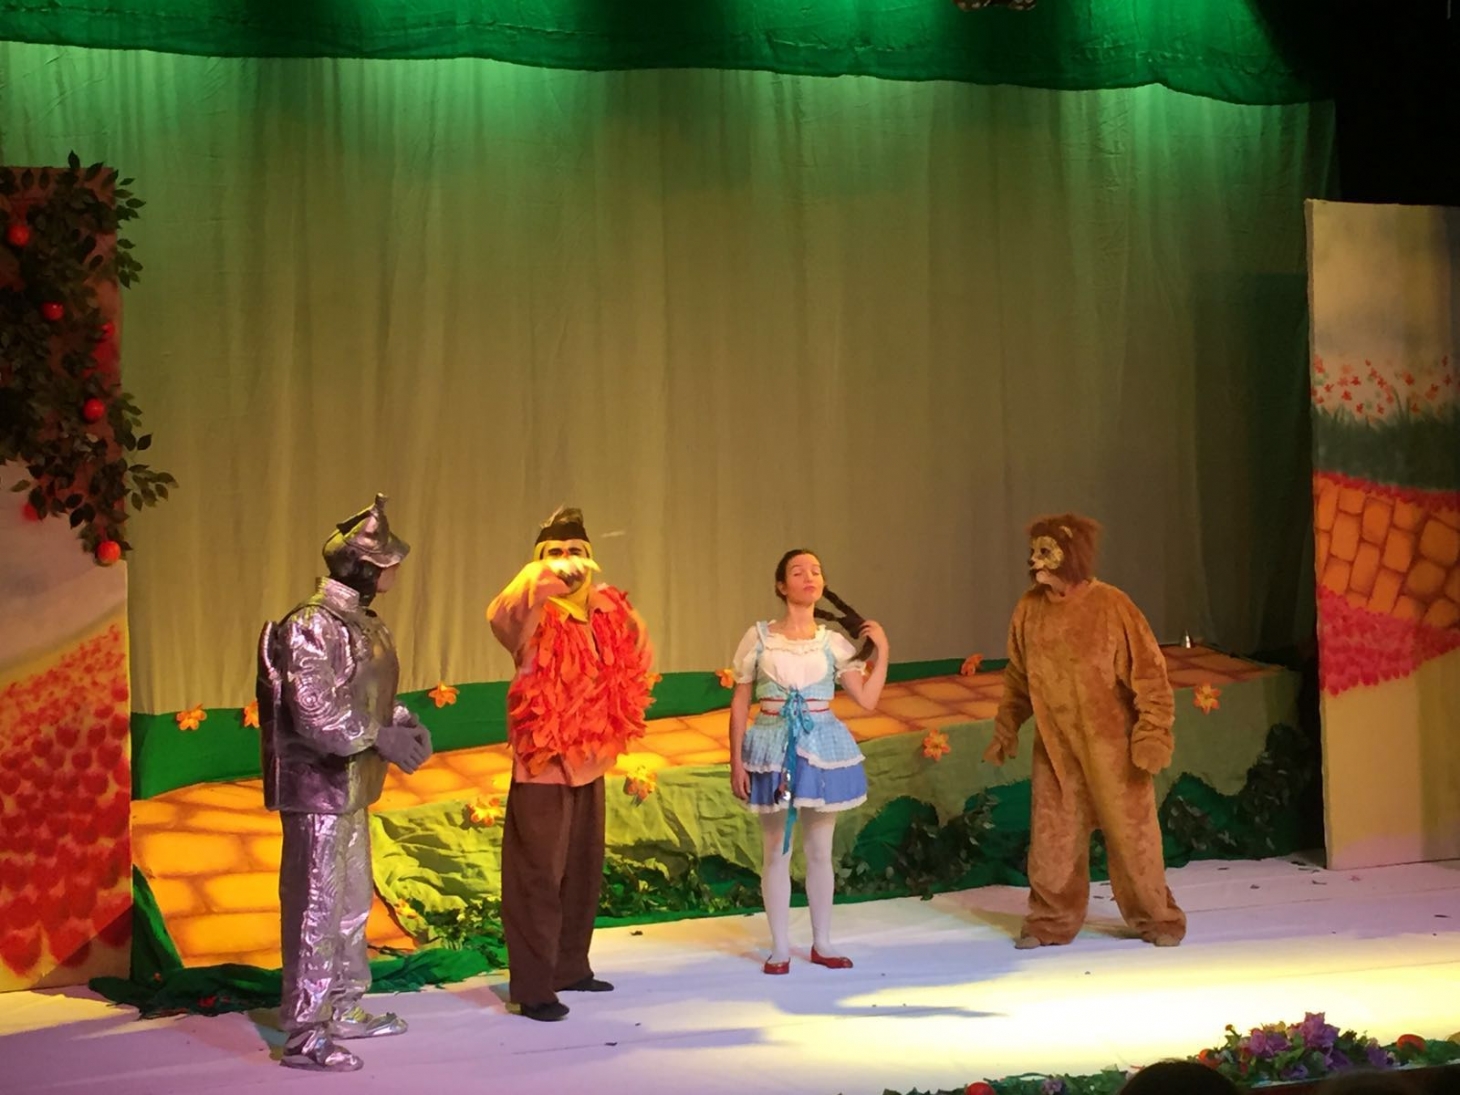 O mundo mágico de Oz no Teatro Armênio Mendes | Jornal da Orla